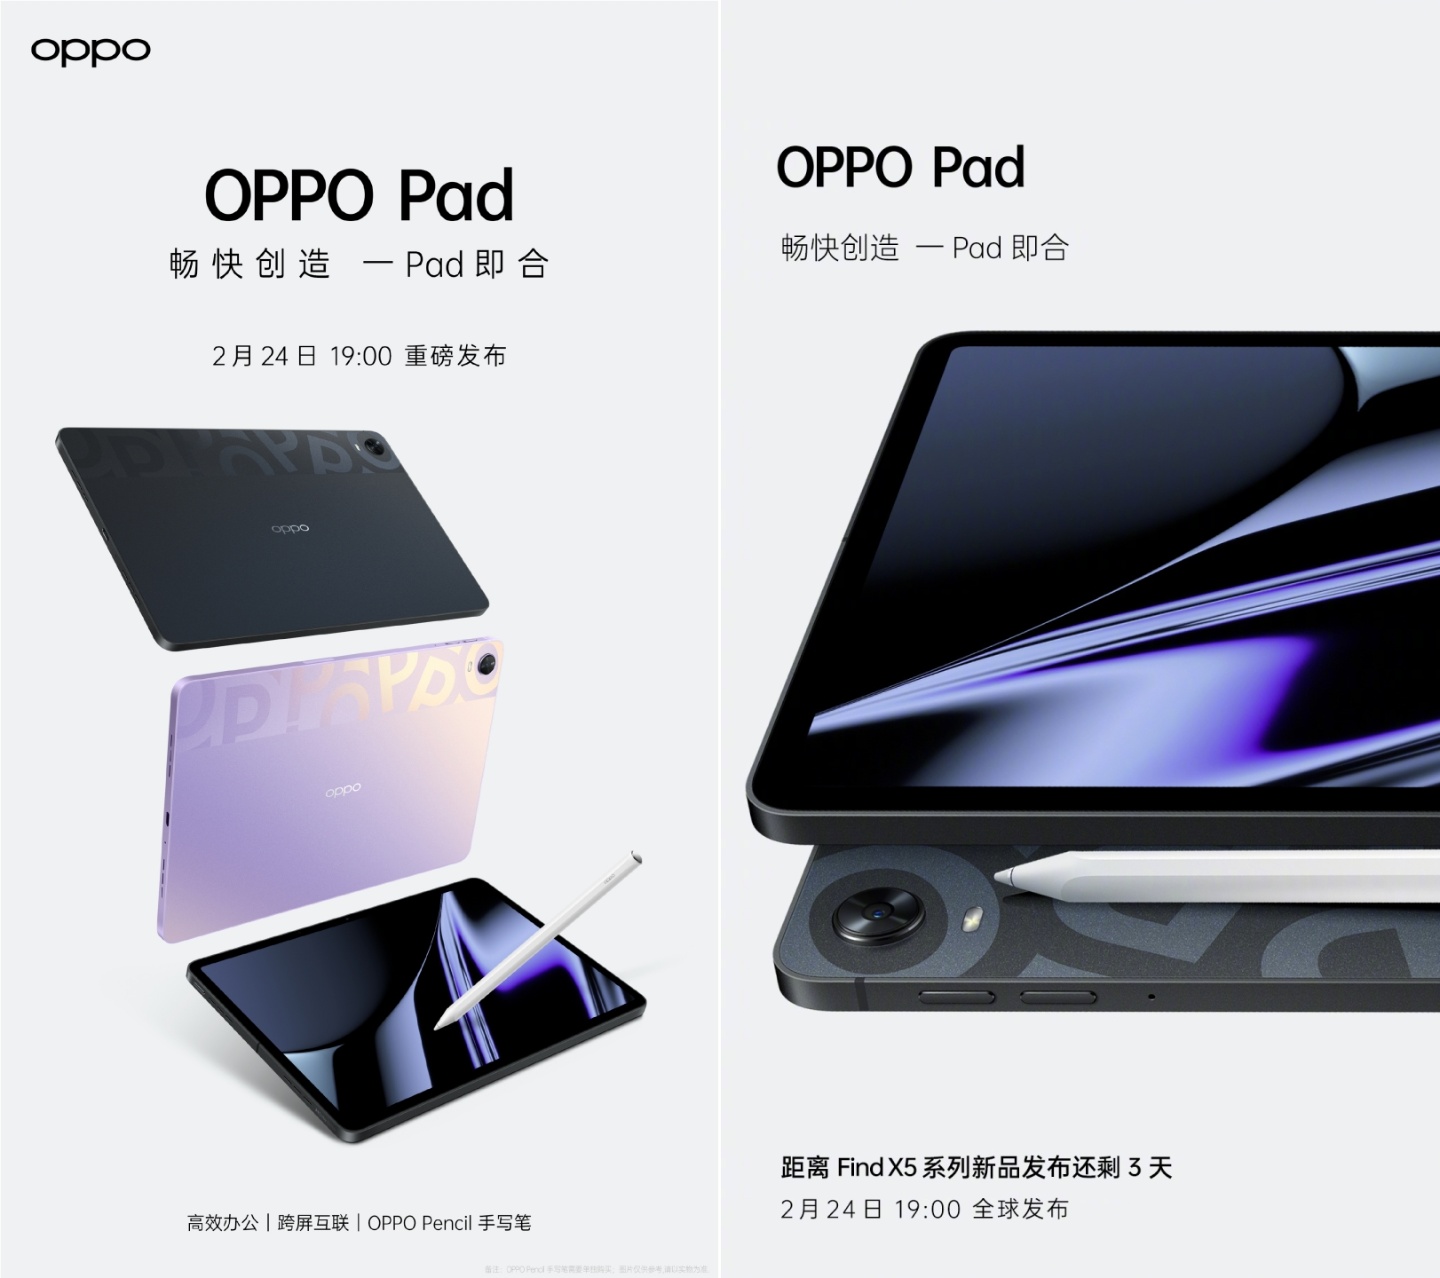 OPPO Pad 外觀曝光！紫色機身超級美 將與 OPPO Find X5 系列一同在 2/24 發表會上亮相